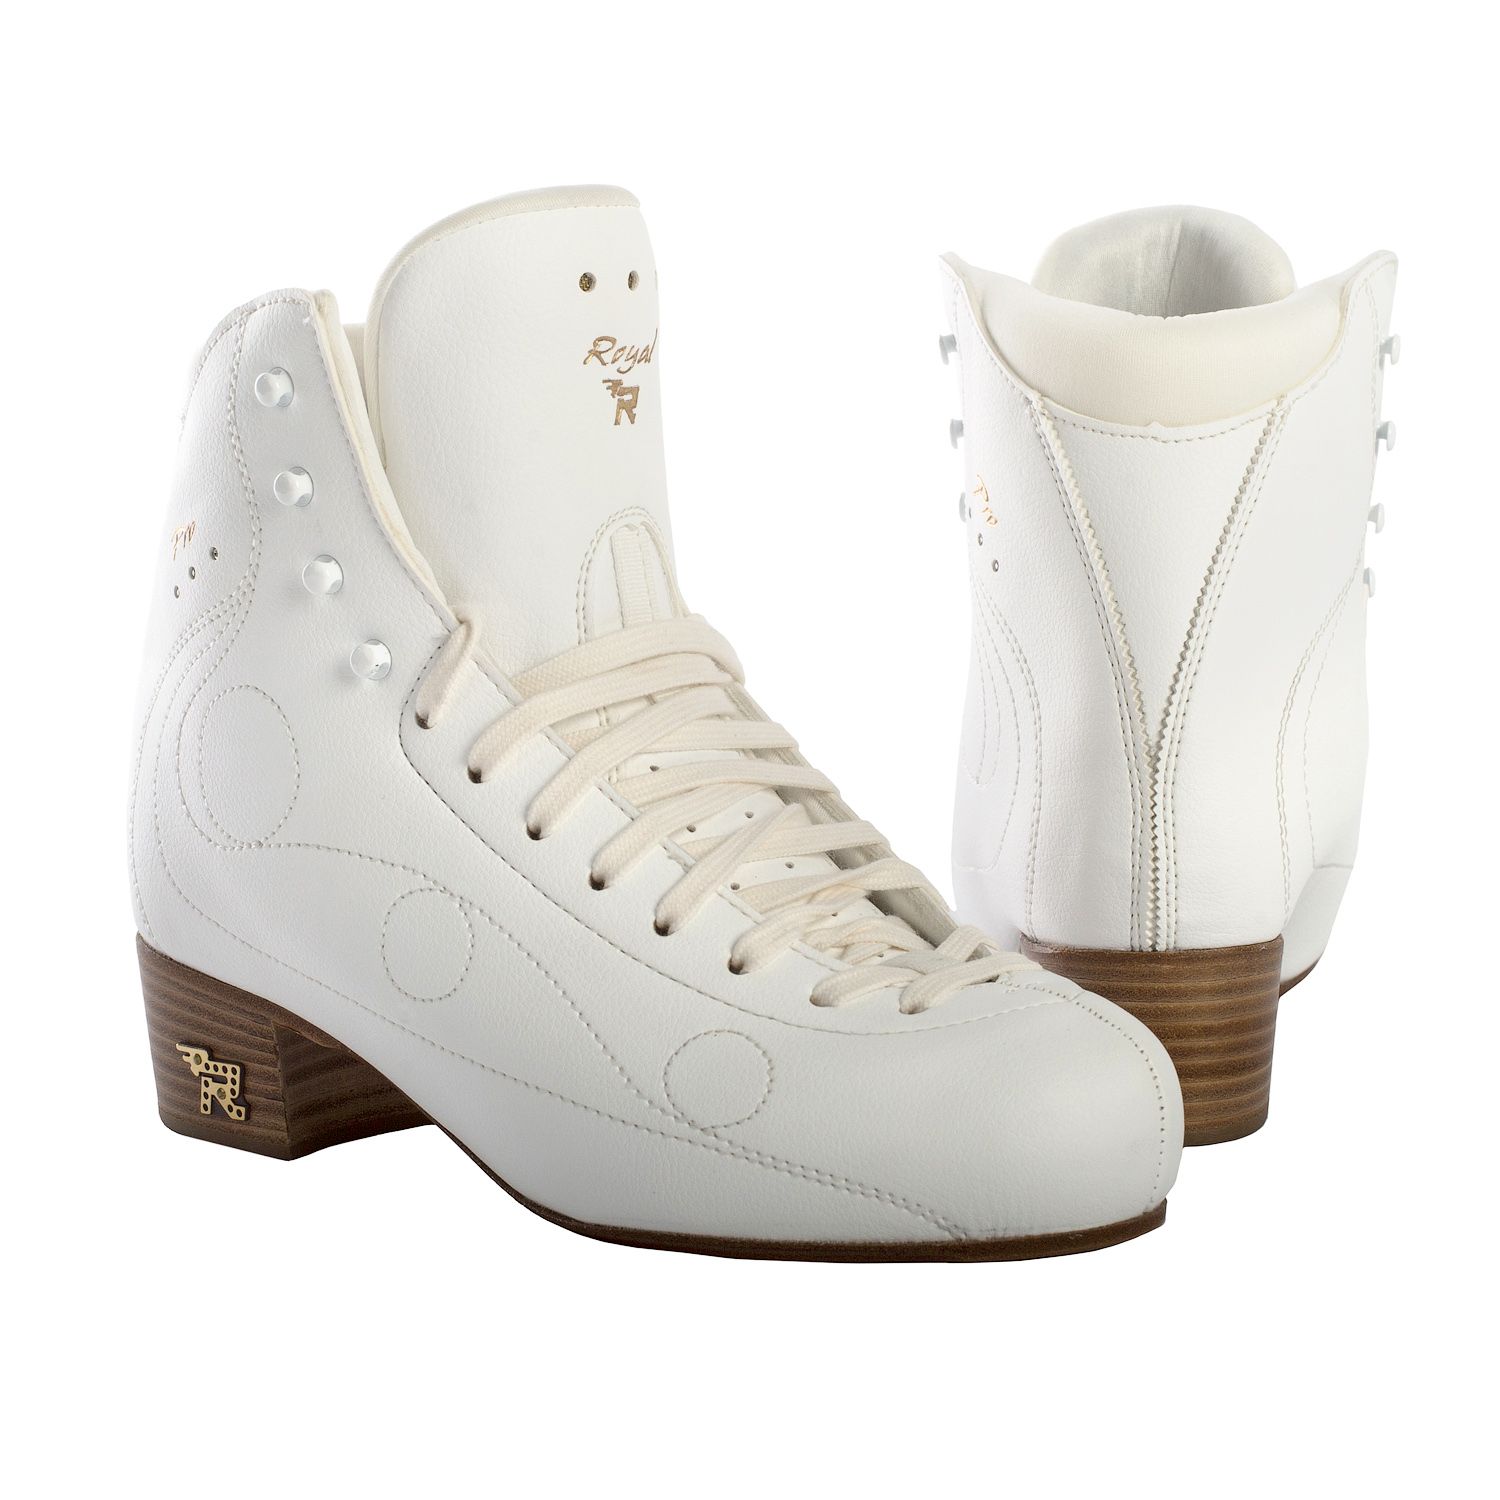 Фигурные ботинки Risport Royal Pro (Белые)